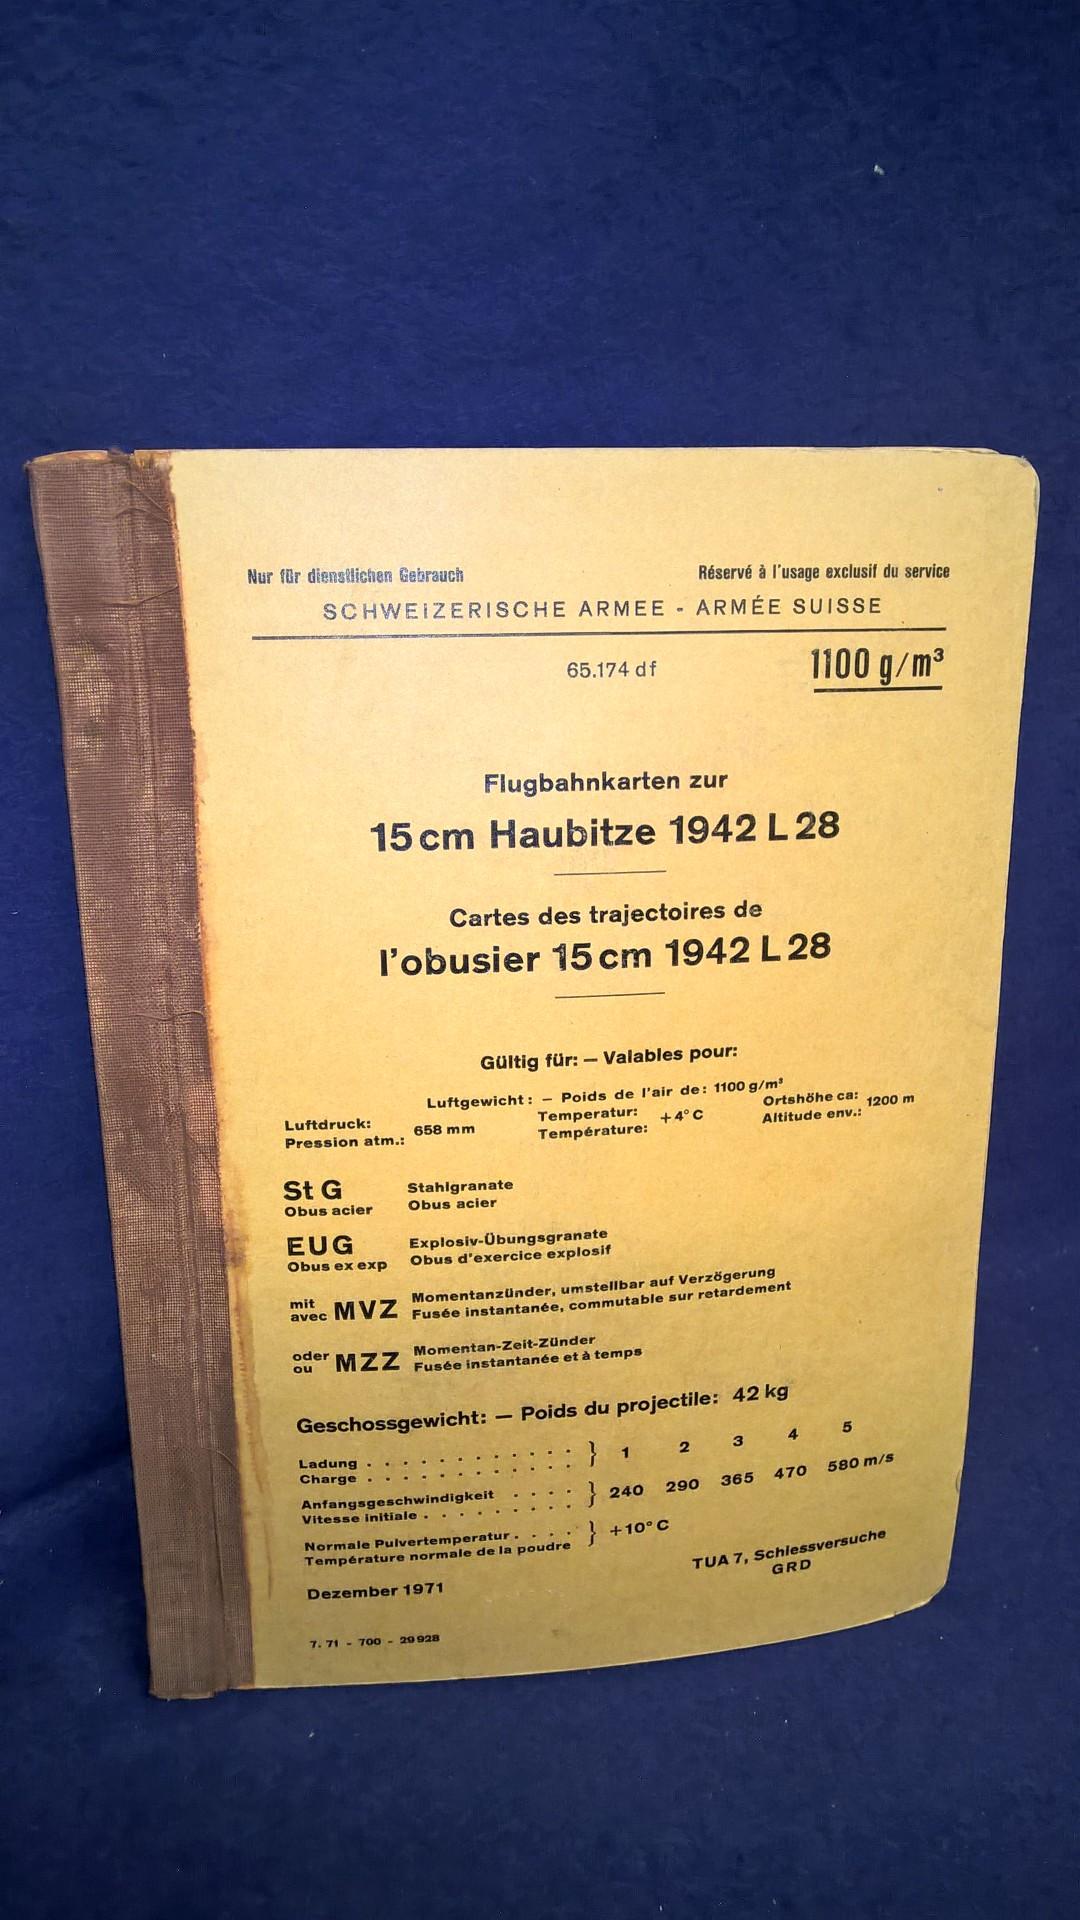 Nur für den dienstlichen Gebrauch! Flugbahnkarten zur 15cm Haubitze 1942 L28.